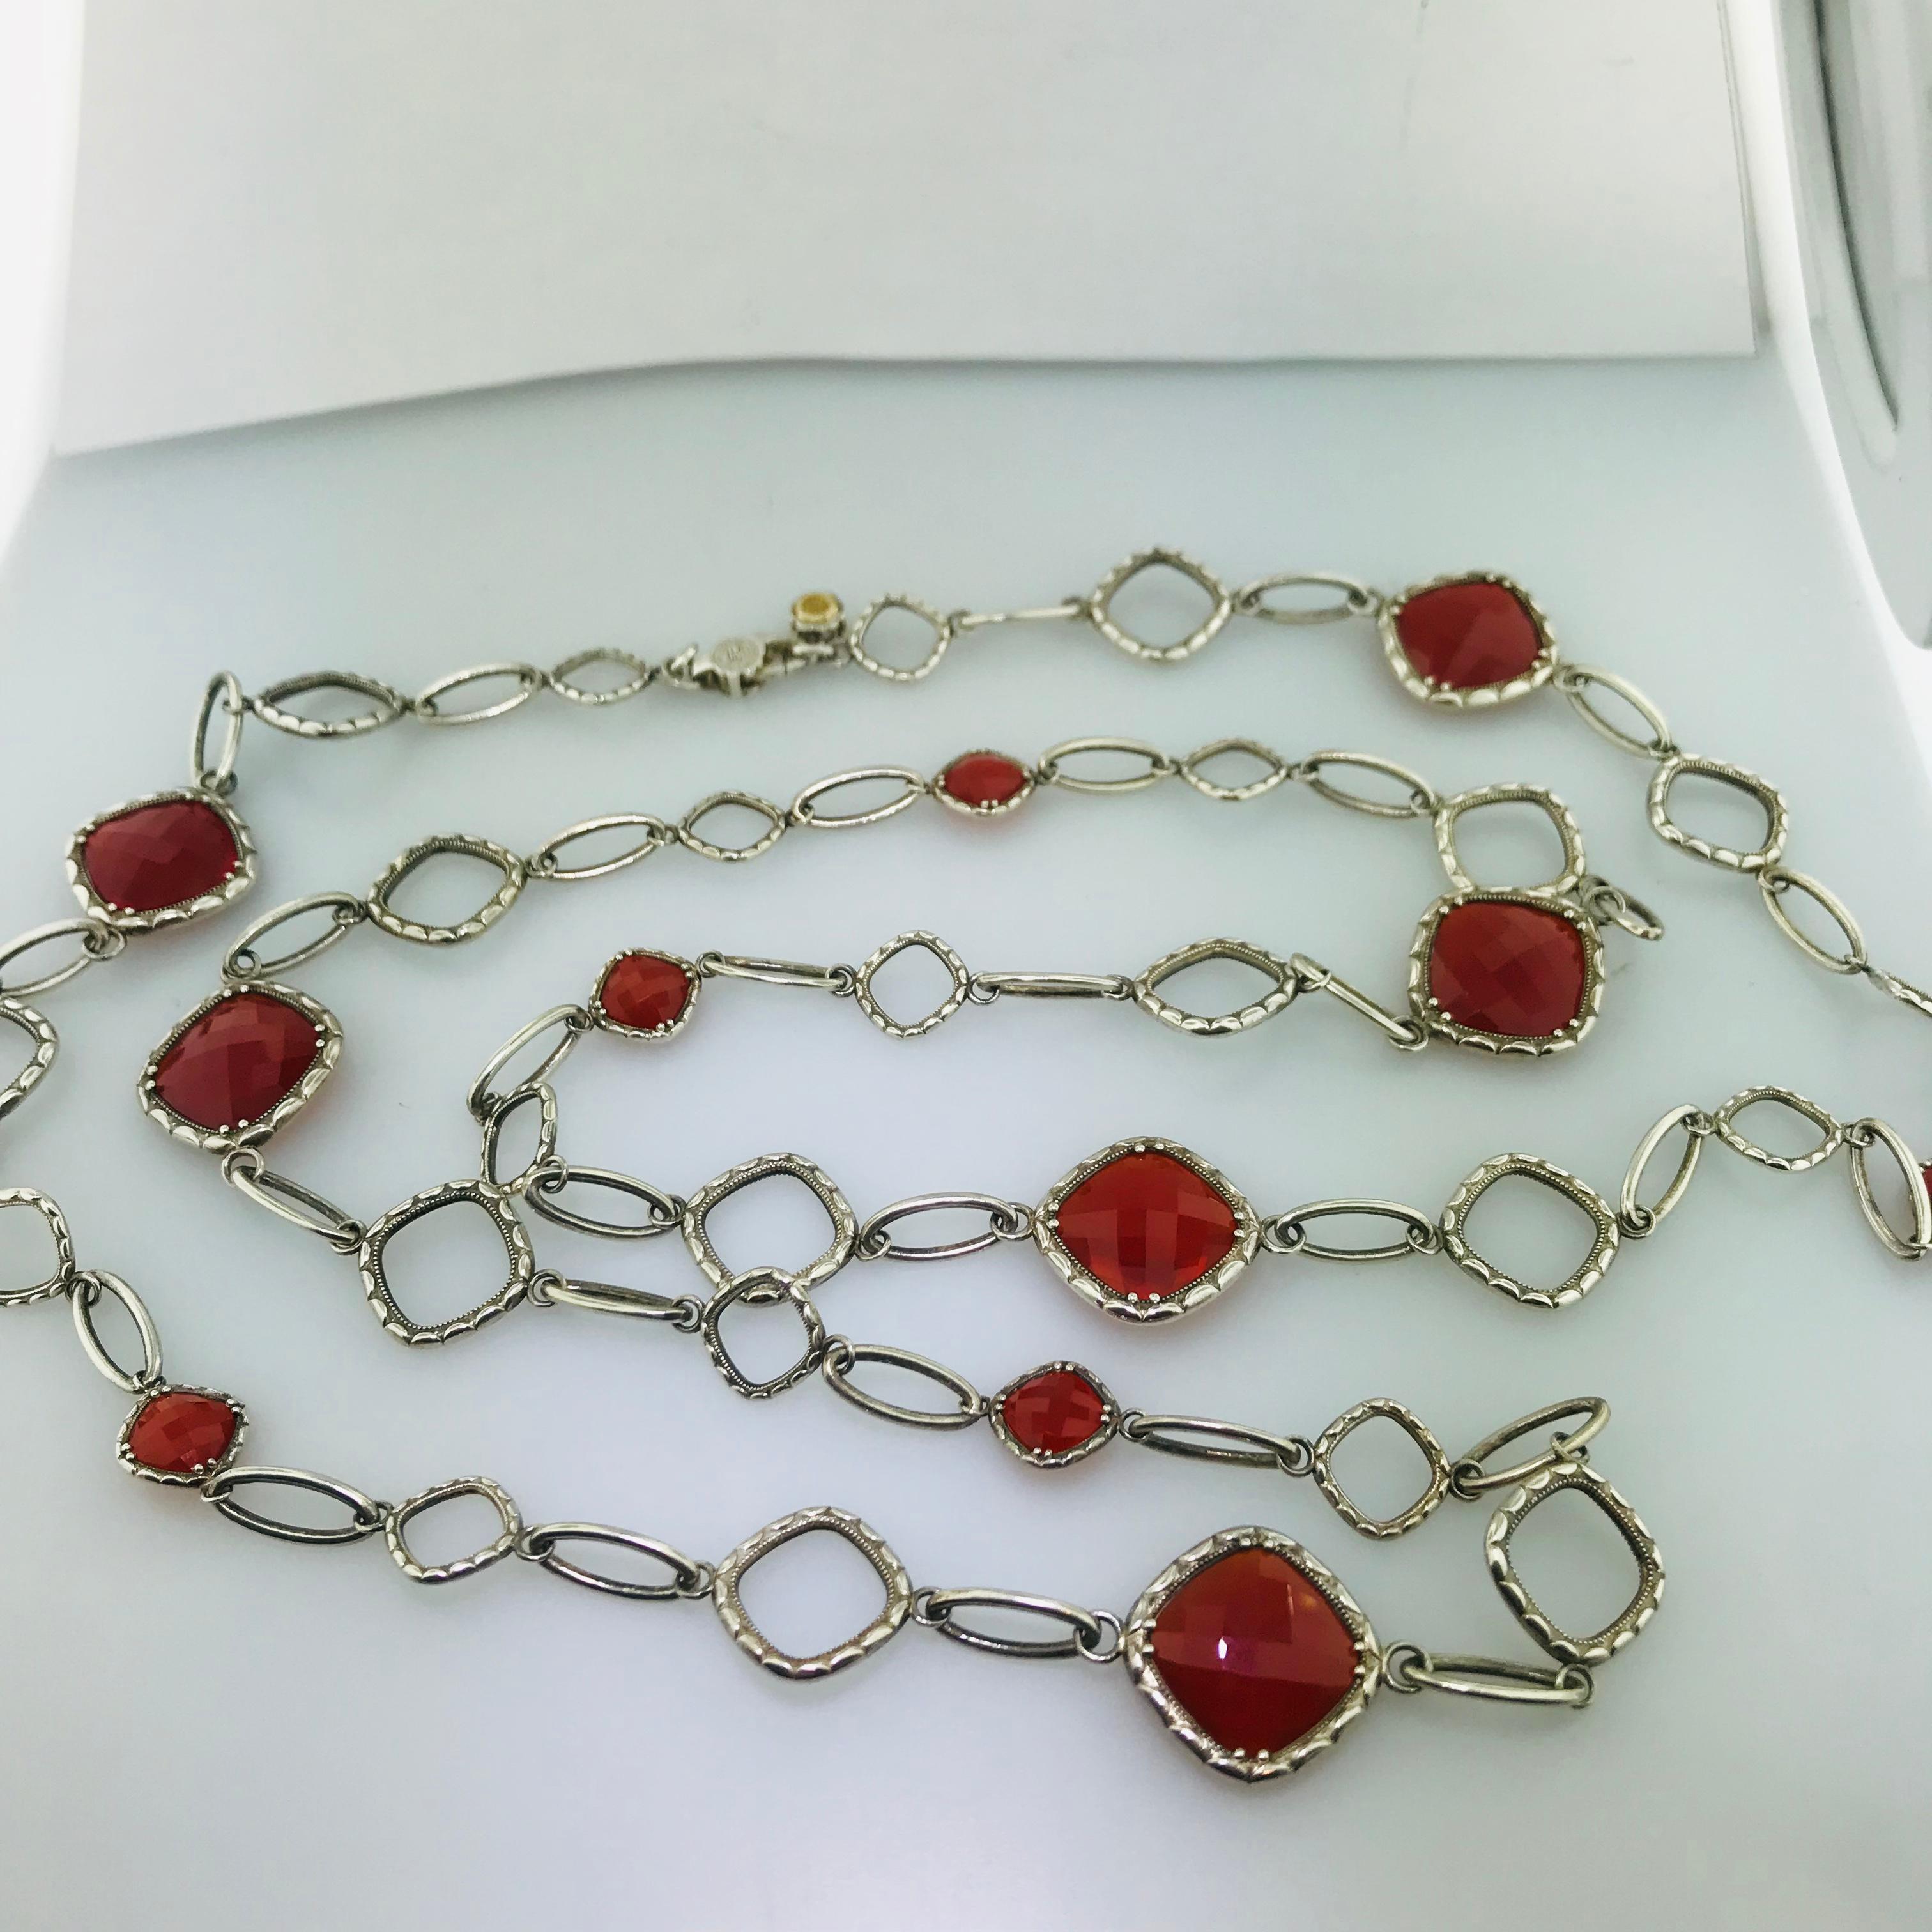 Artisan Original Rare Tacori Cascading Gem Necklace Featuring Clear Quartz over Red Onyx For Sale